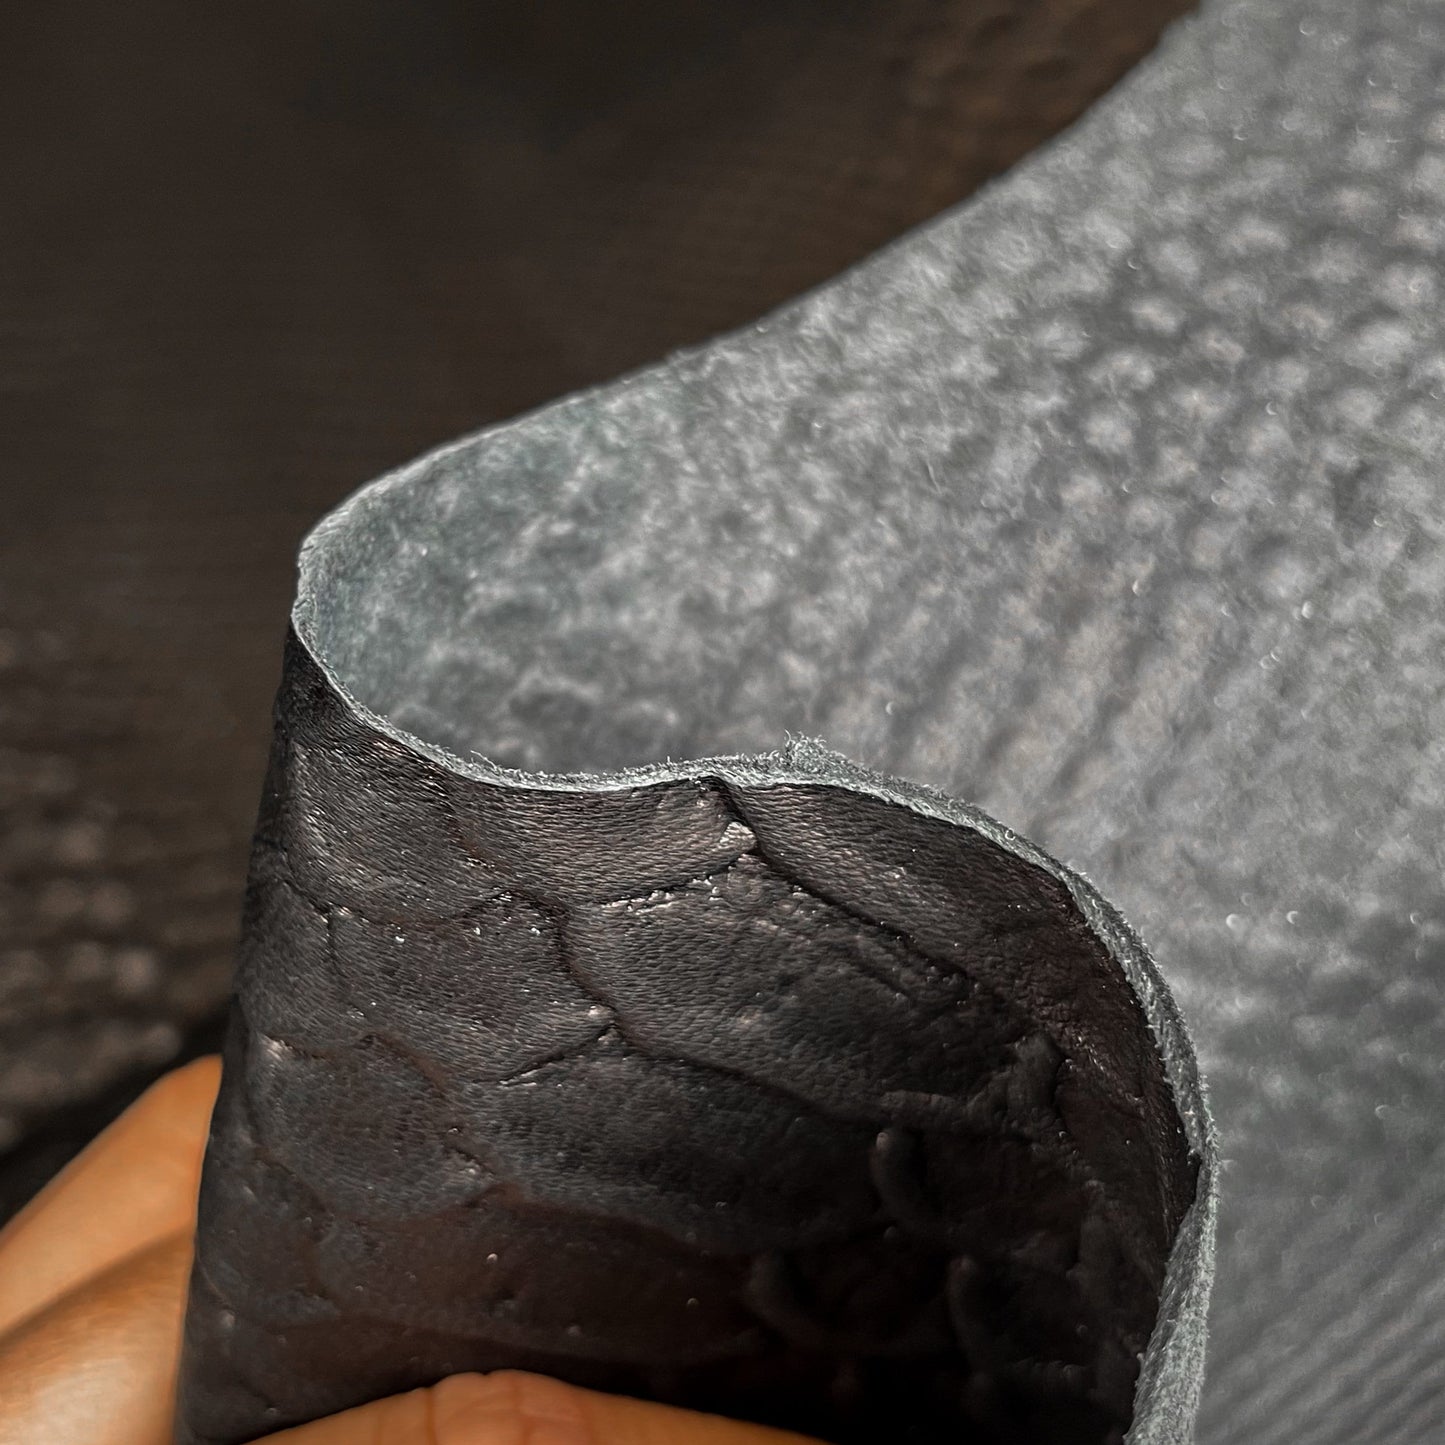 Black Snakeskin Lambskin Leather 0.8mm/2oz / BLACK SNAKE 598